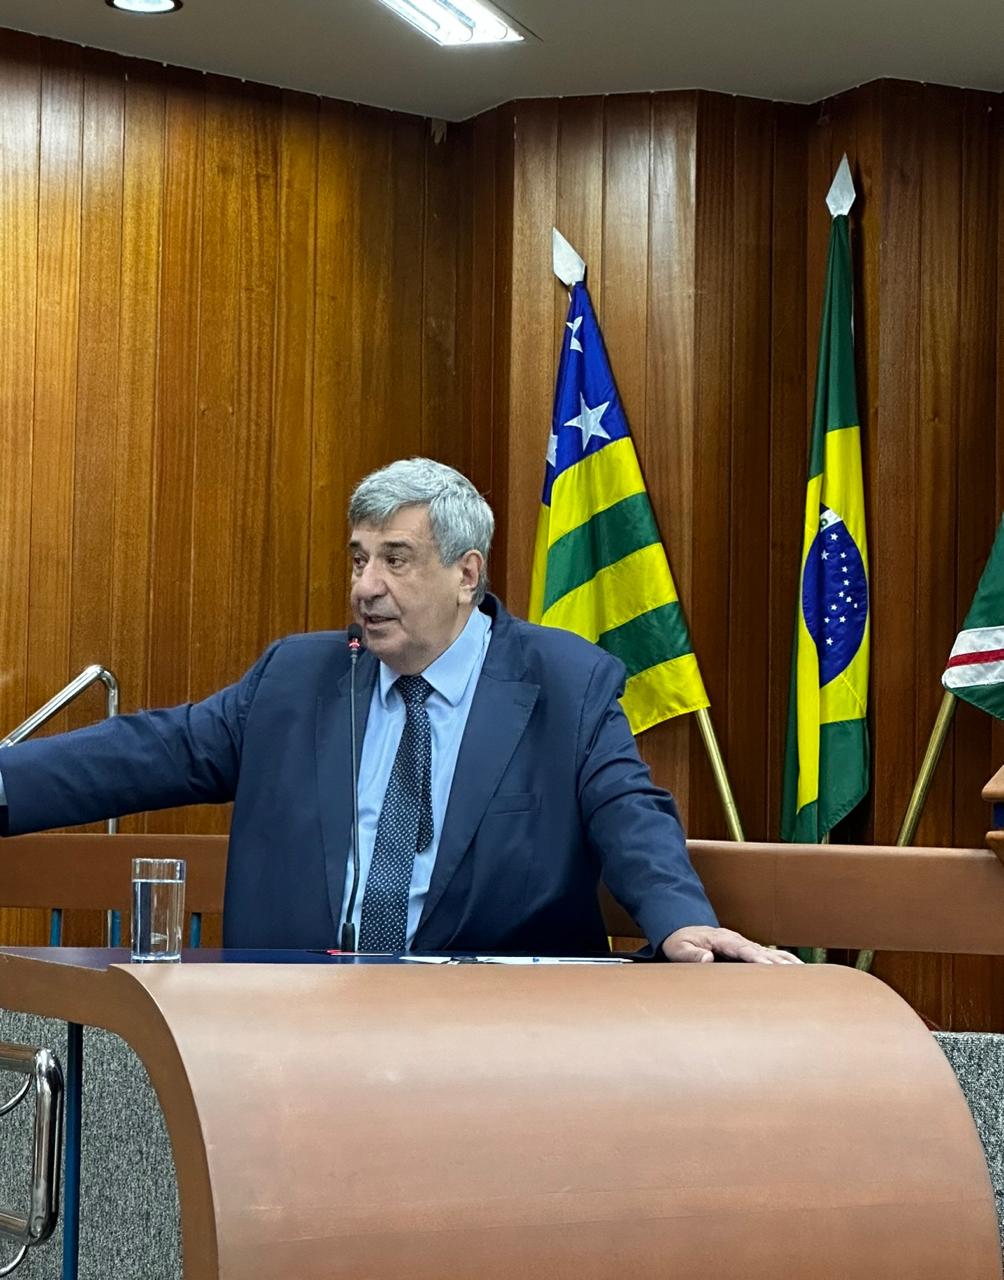 Goiânia aplicou 21,4% de recursos próprios em saúde no ano de 2023: dados foram divulgados pelo secretário de Saúde, Wilson Pollara, em audiência pública realizada nesta terça-feira (23/4) na Câmara M